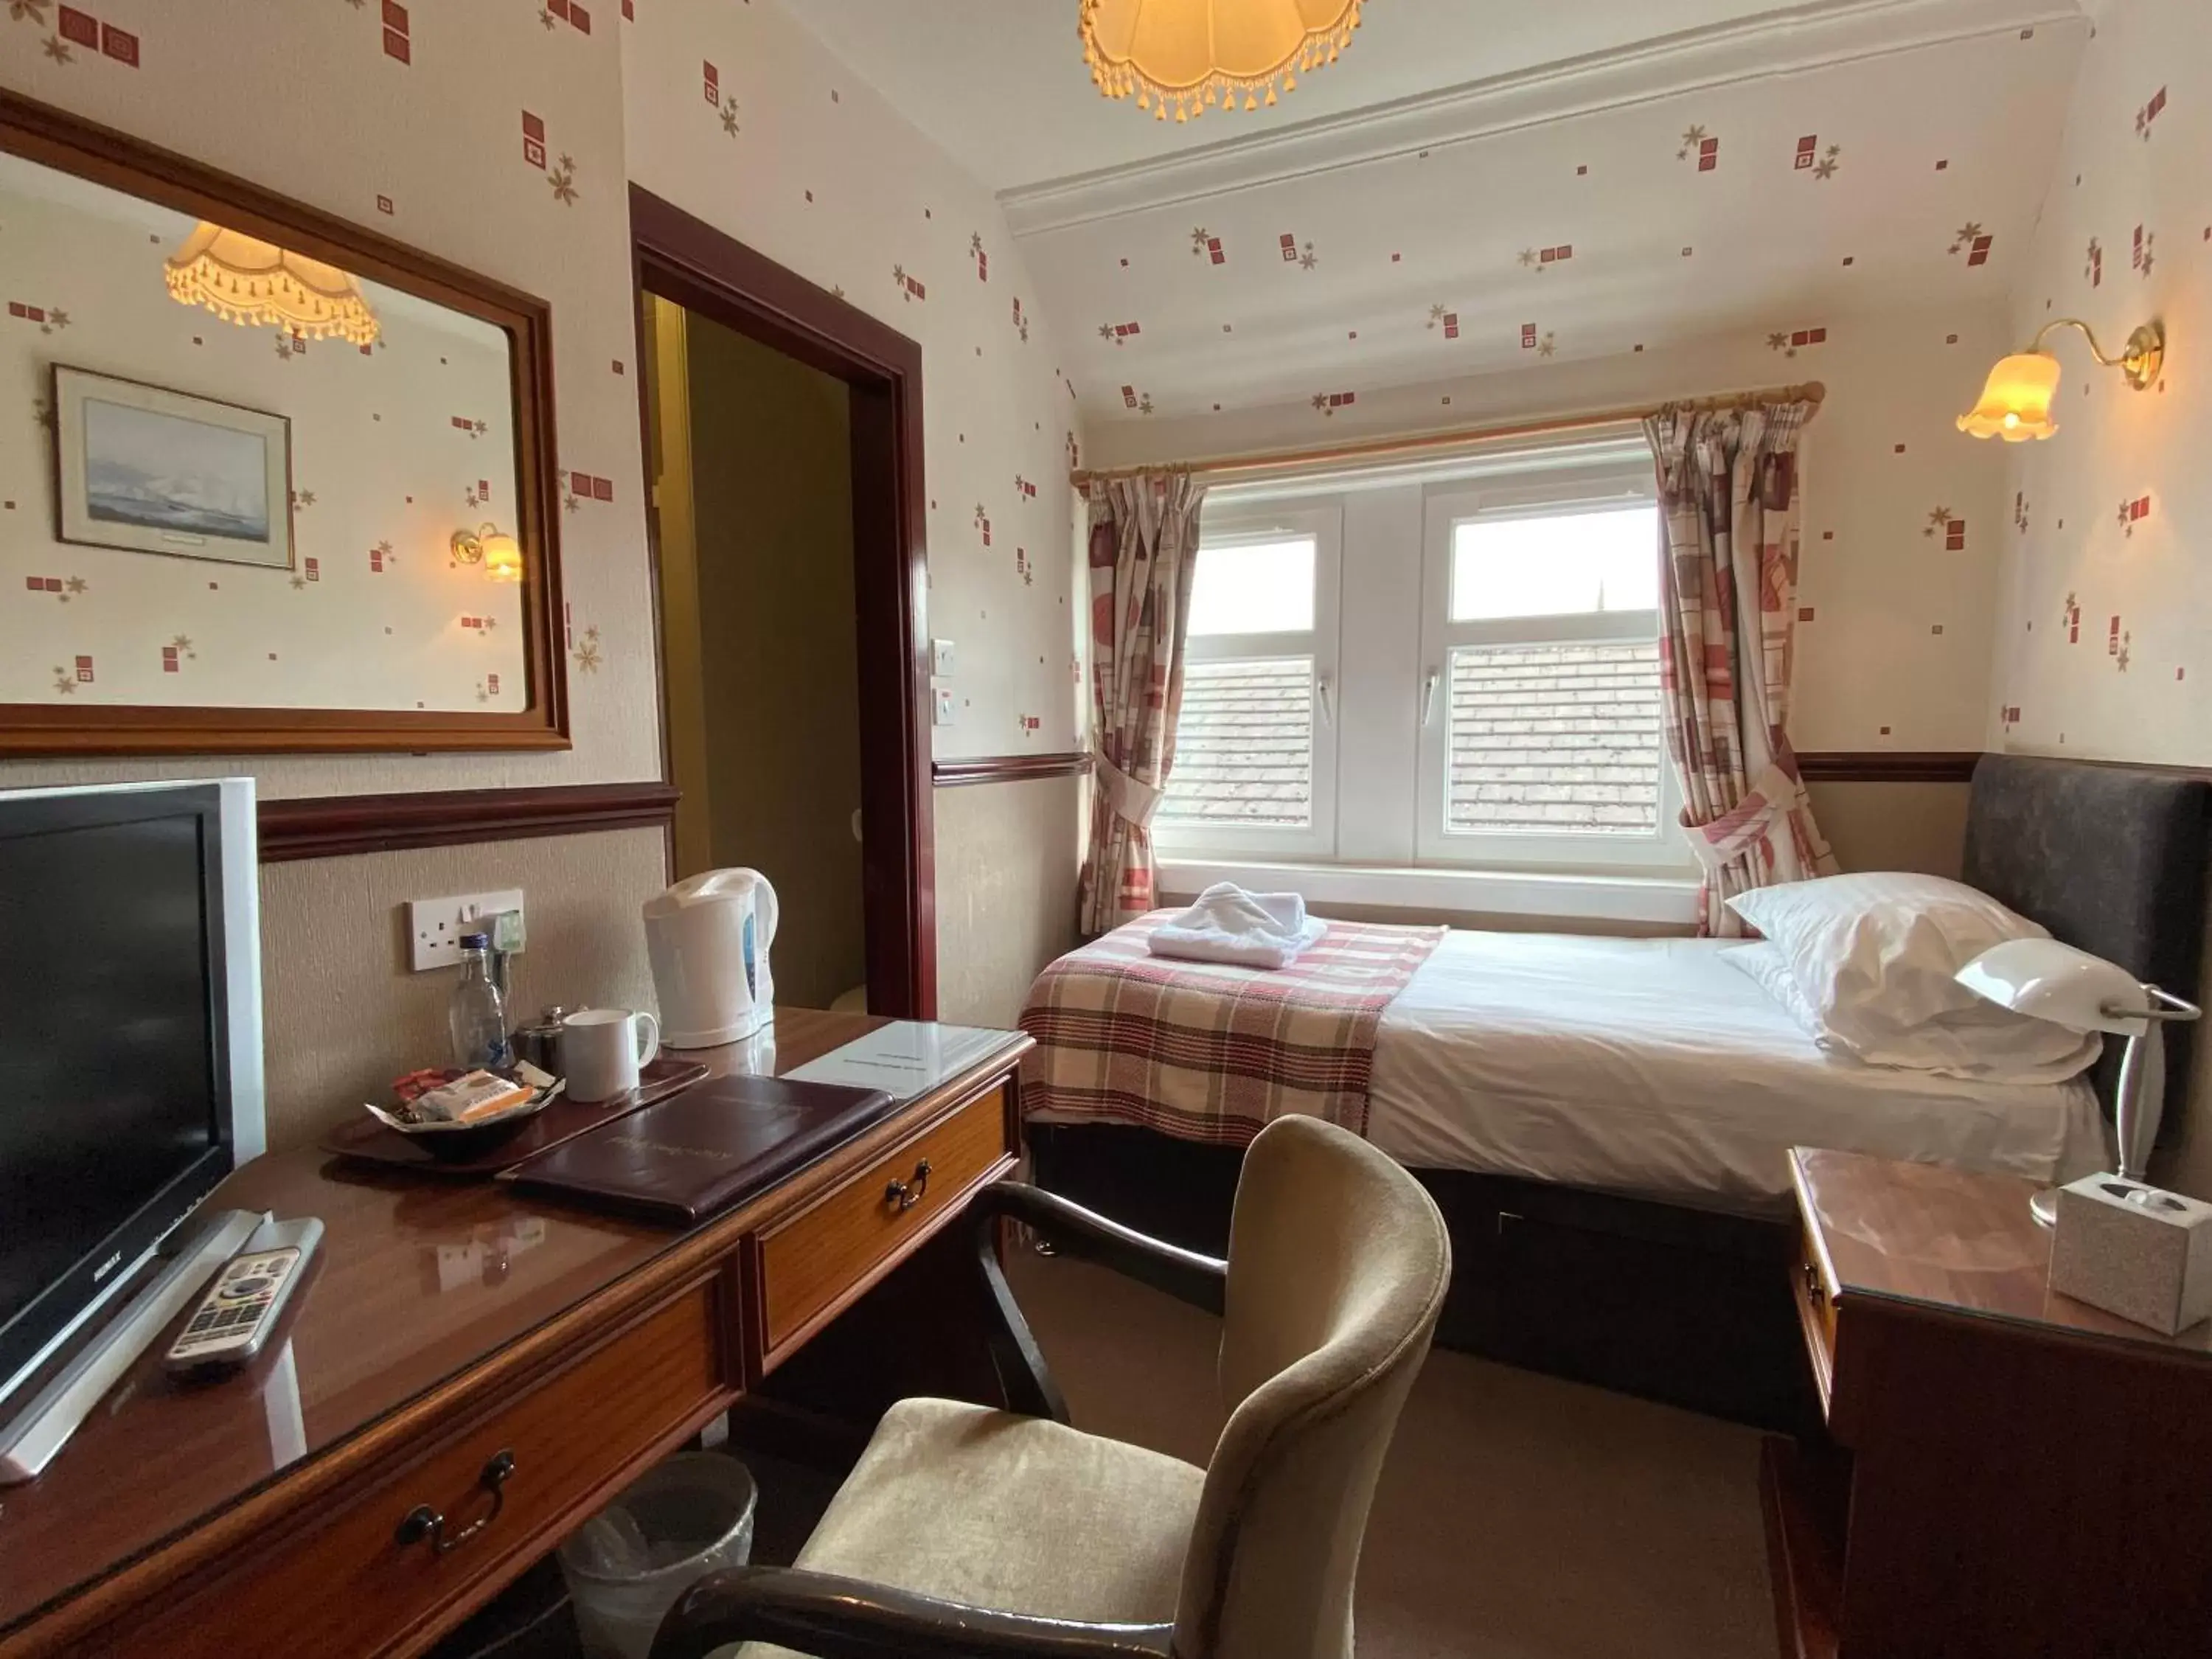 Bedroom in Kings Arms Hotel